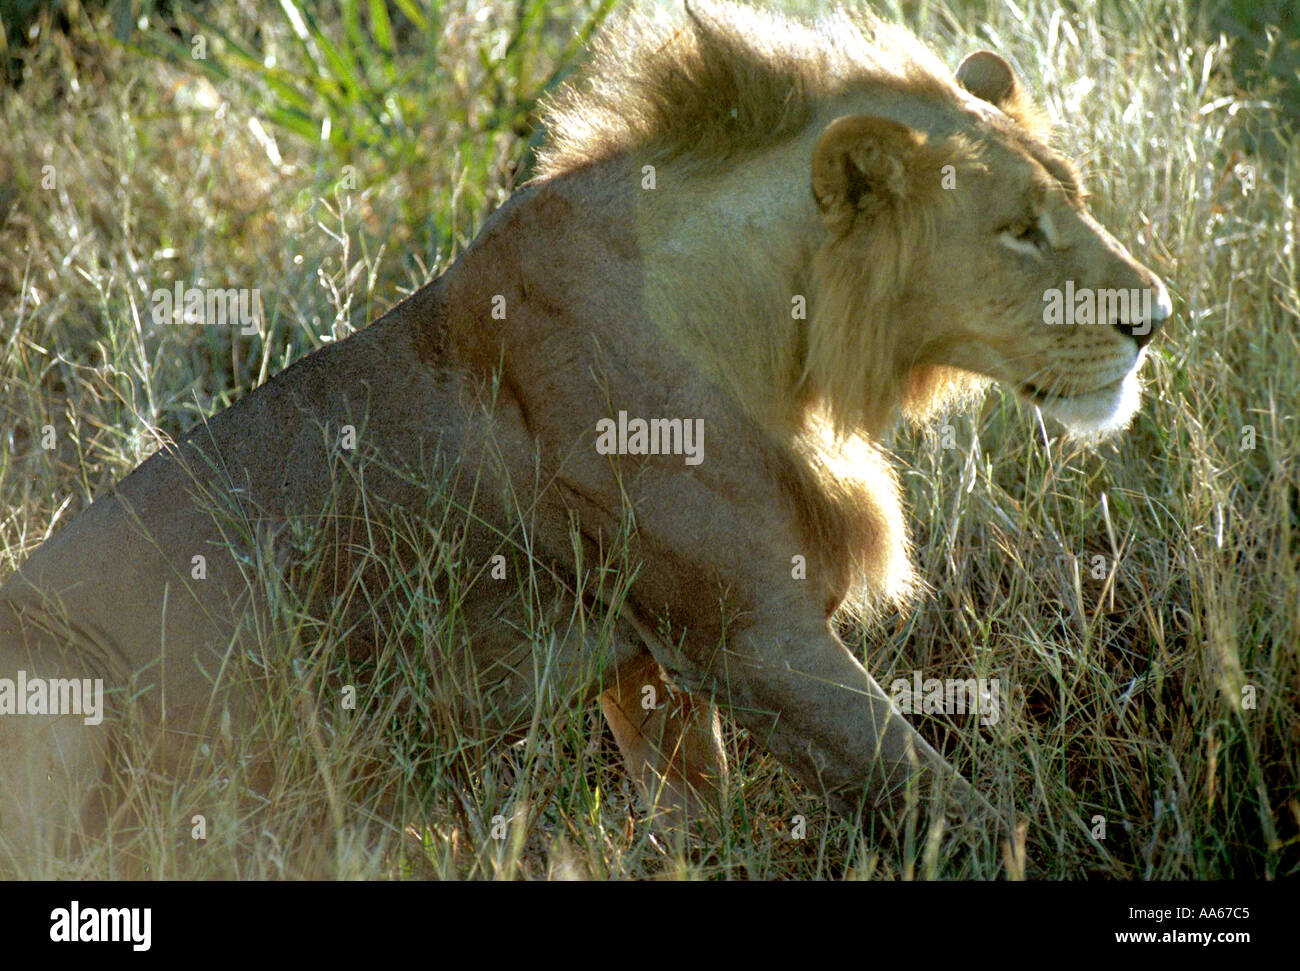 Un Lion esce dallo stato di stop nel terreno erboso dell'Okavango Delta regione nel nord del Botswana Foto di Ami Vitale Foto Stock